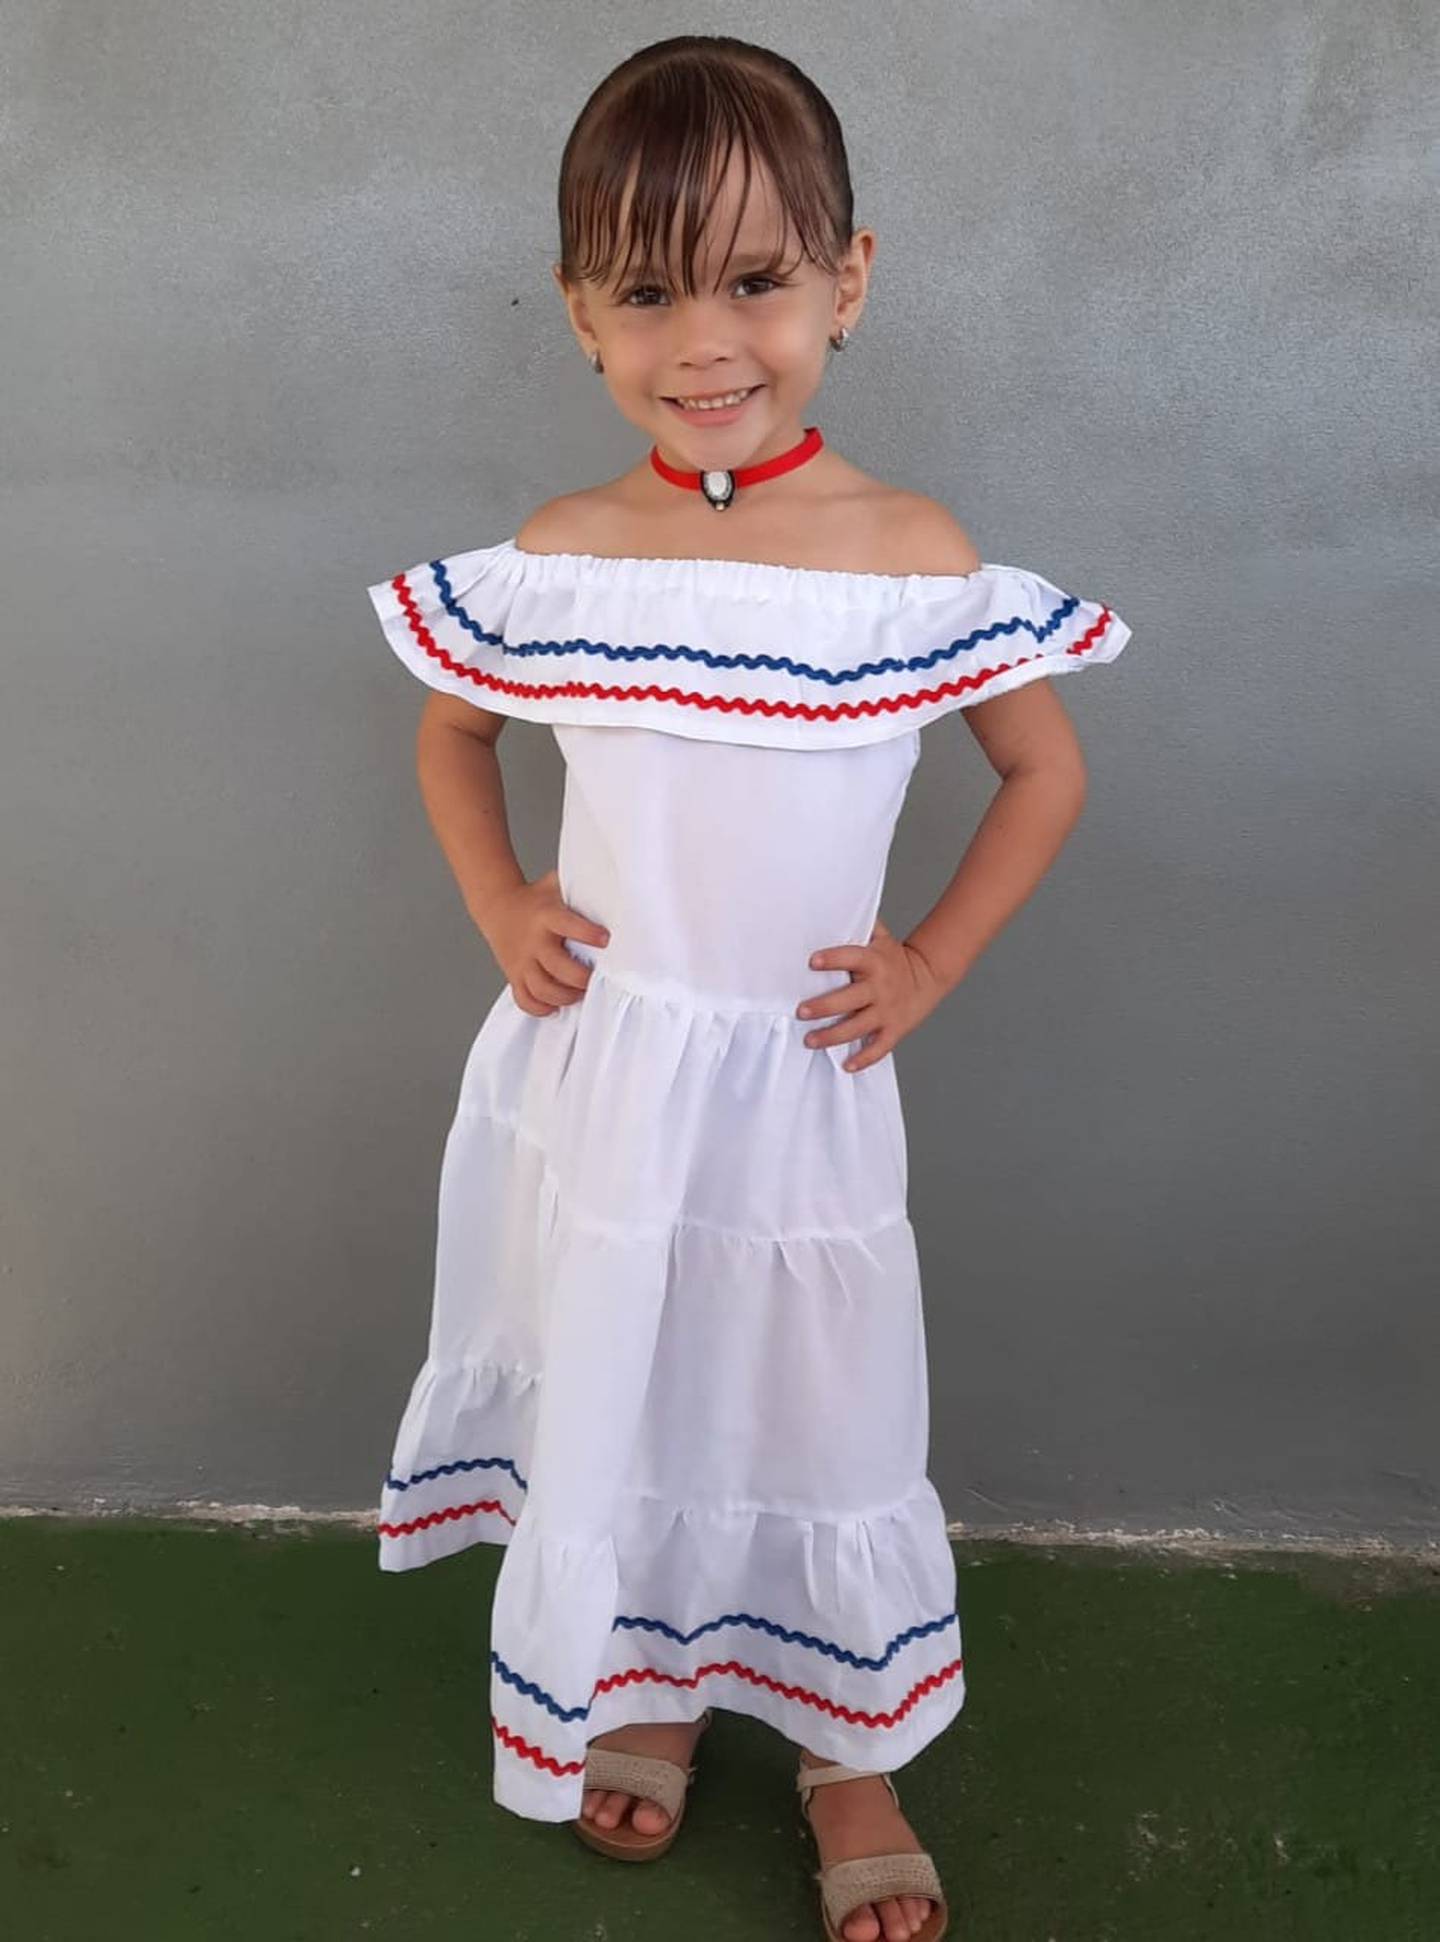 Mariángel Mora Pérez soñaba con su fiesta de cumpleaños número 6, ella murió atropellada en Cariari. Foto: Osvaldo Mora